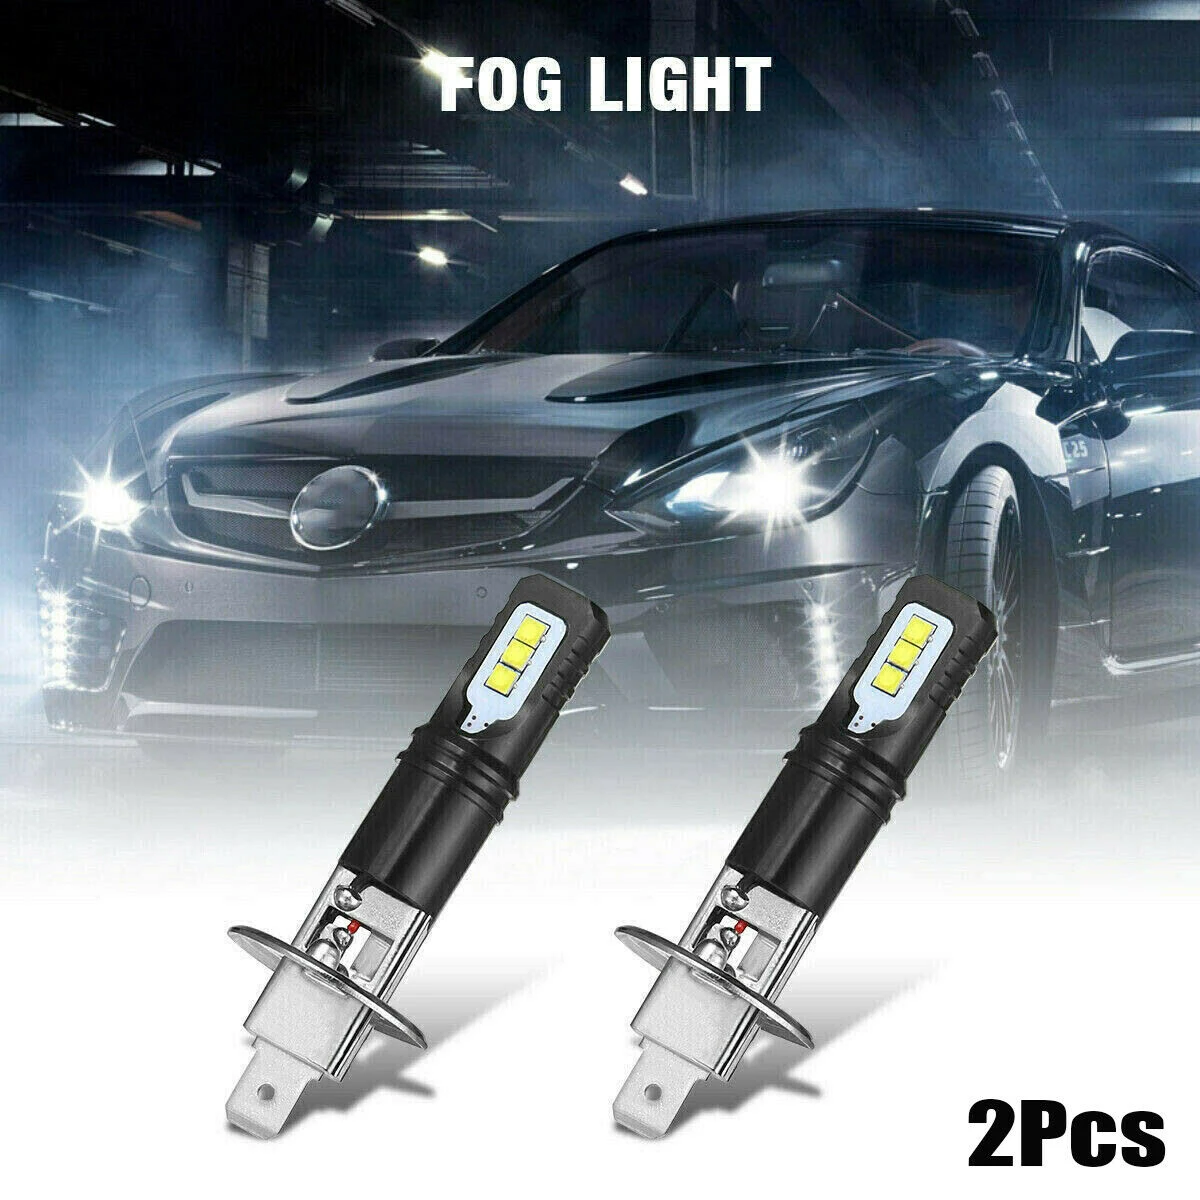 fog light for car 2x H1 80W 6000K 6000LM Super Bright White DRL LED Headlight Bulb Kit High Beam CSP Chips Fog Lamp Driving Light For Auto 12v 24v car bulbs